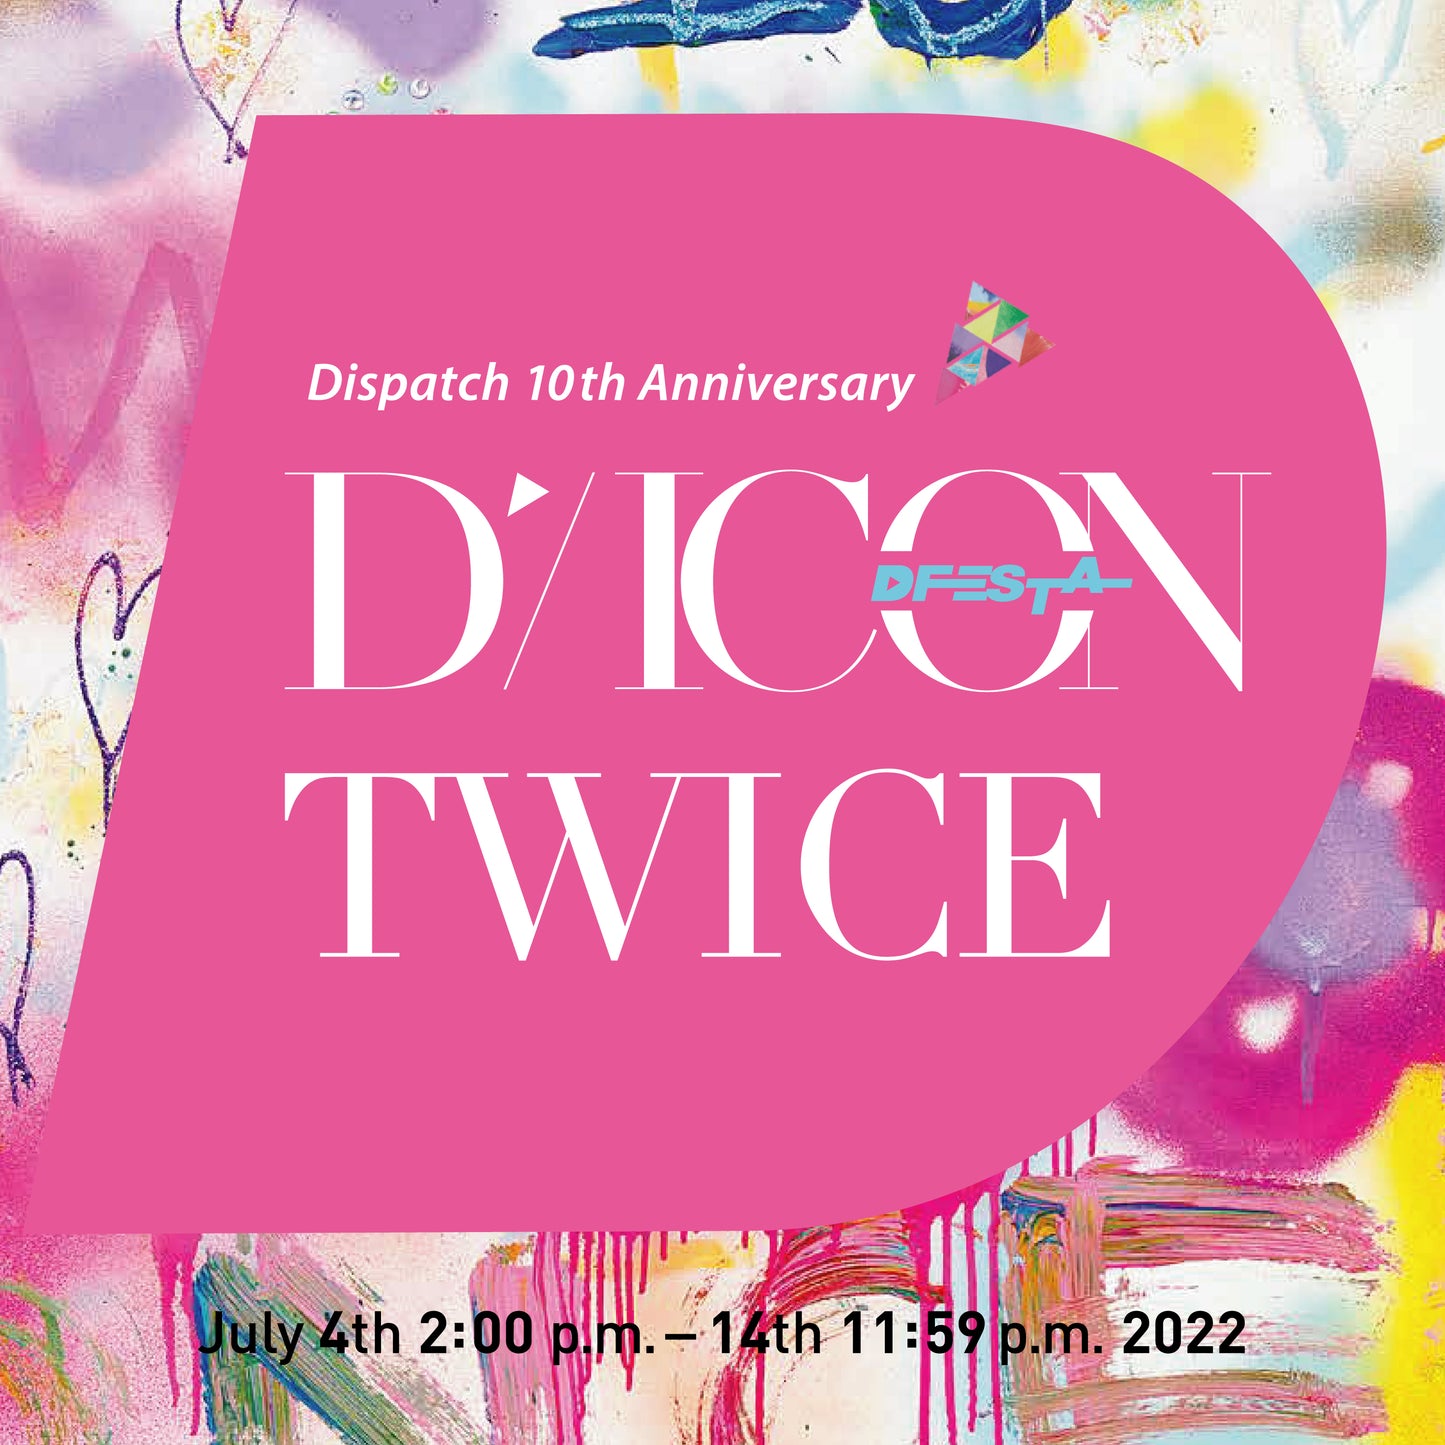 TWICE | Dispatch 10th Anniversary | DICON D'FESTA TWICE